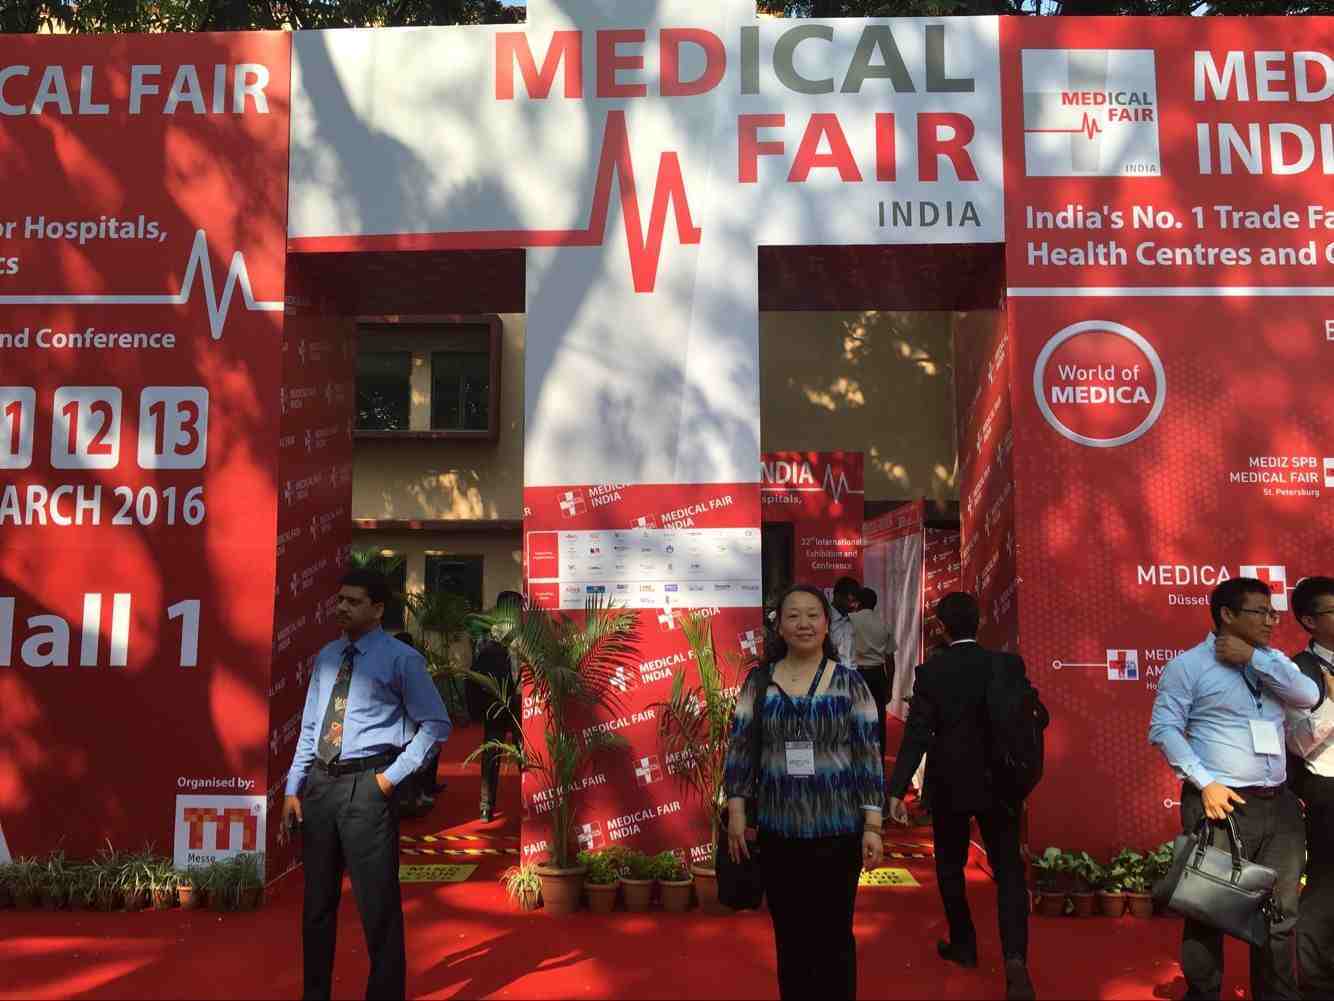 Our 2016 Mar. 11th India Mumbai Meical Fair